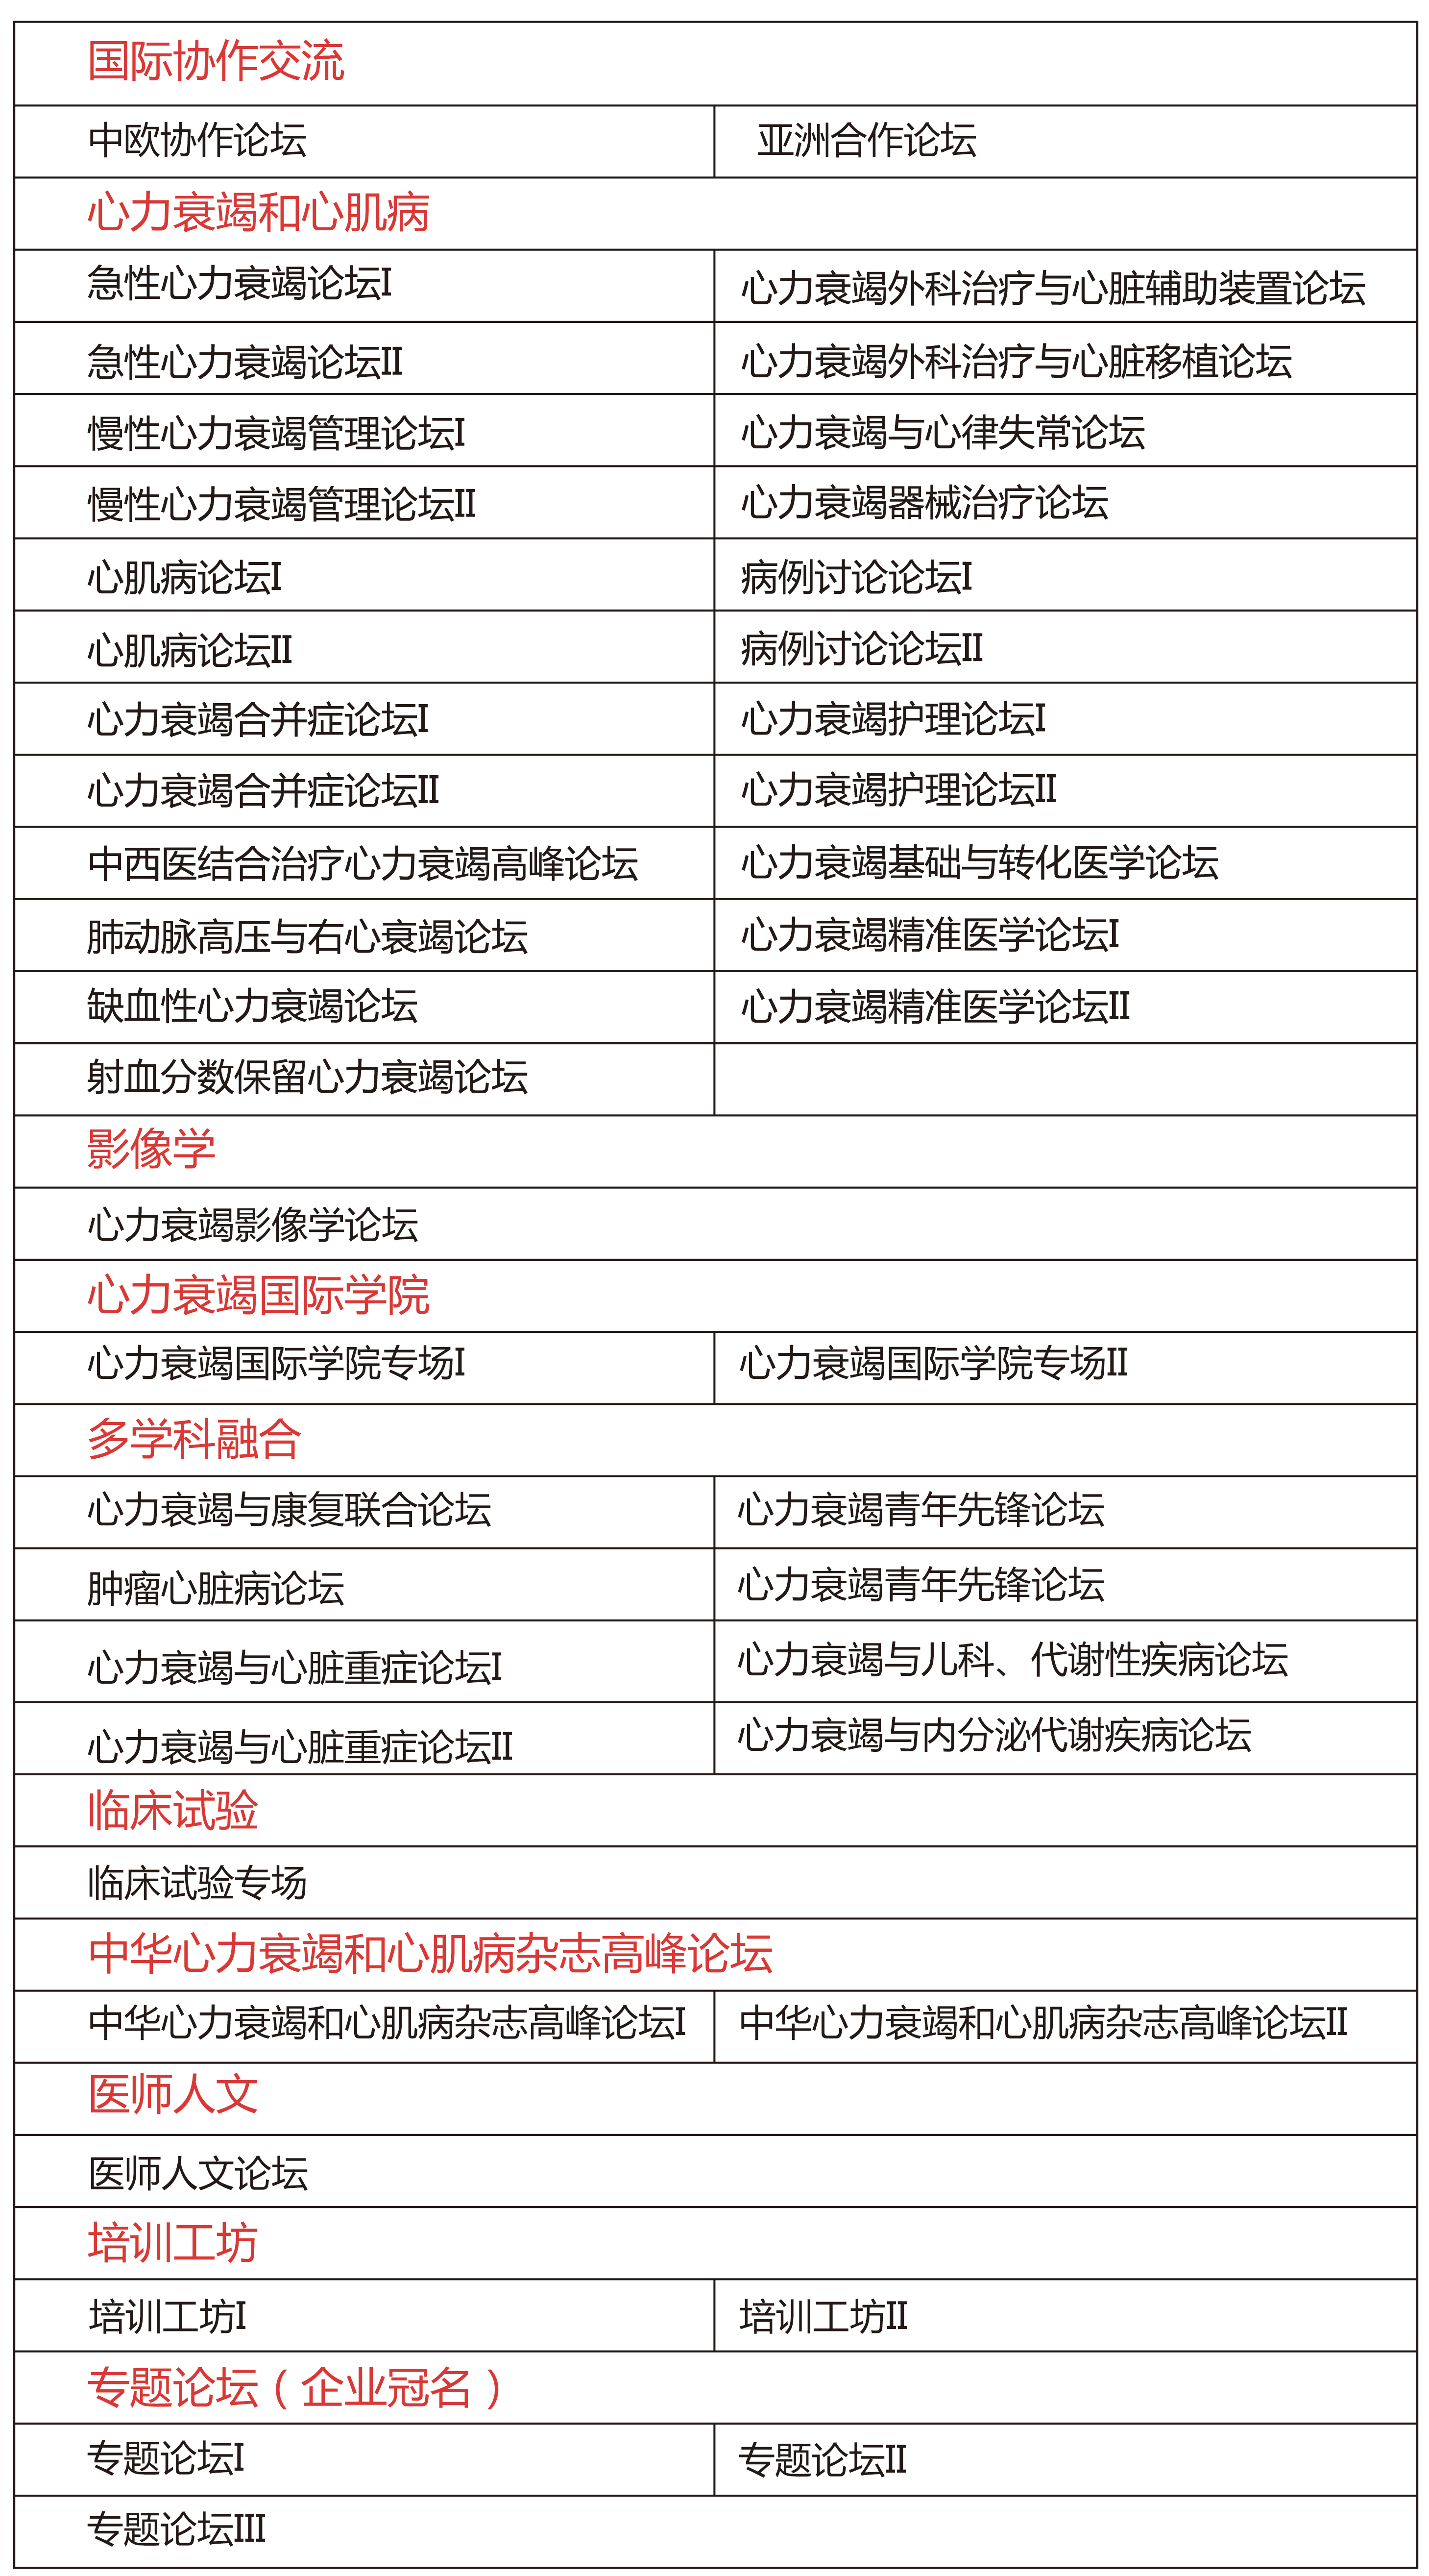 2018中国国际心力衰竭大会暨中国医师协会心力衰竭专业委员会年会（第二轮<font color="red">通知</font>）